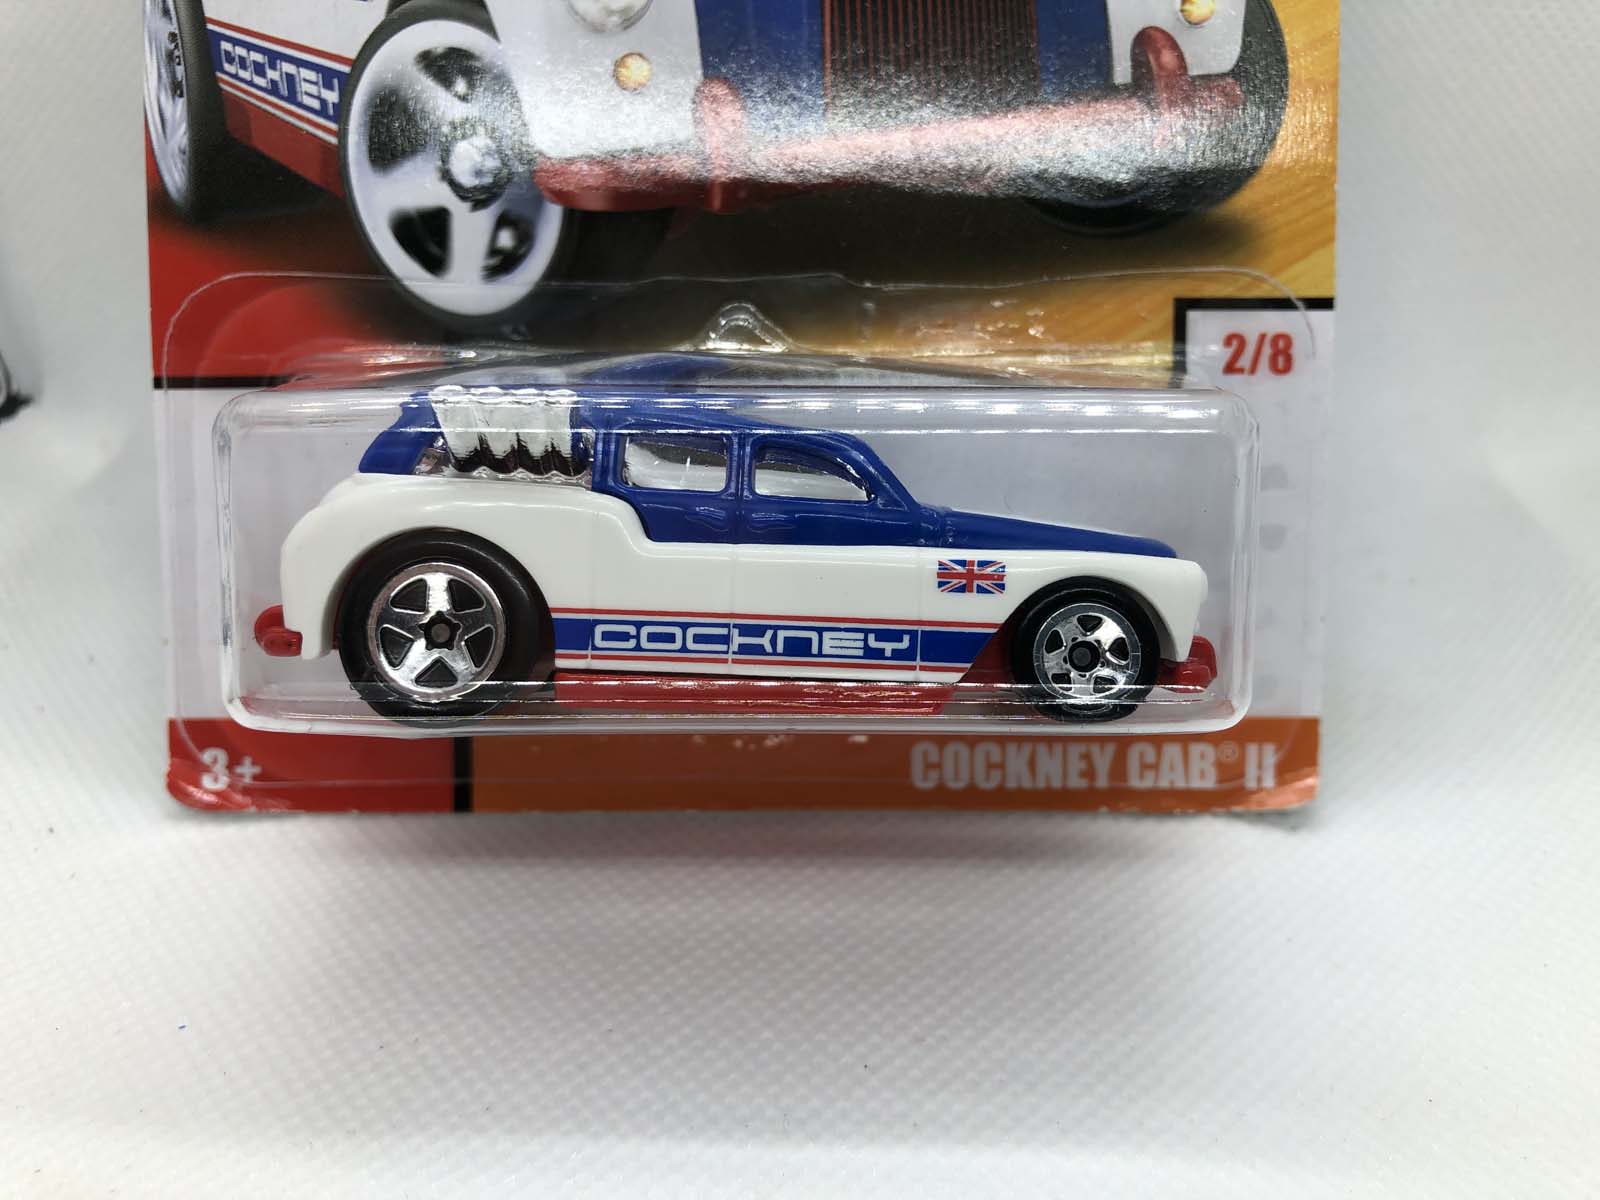 Cockney Cab II Hot Wheels